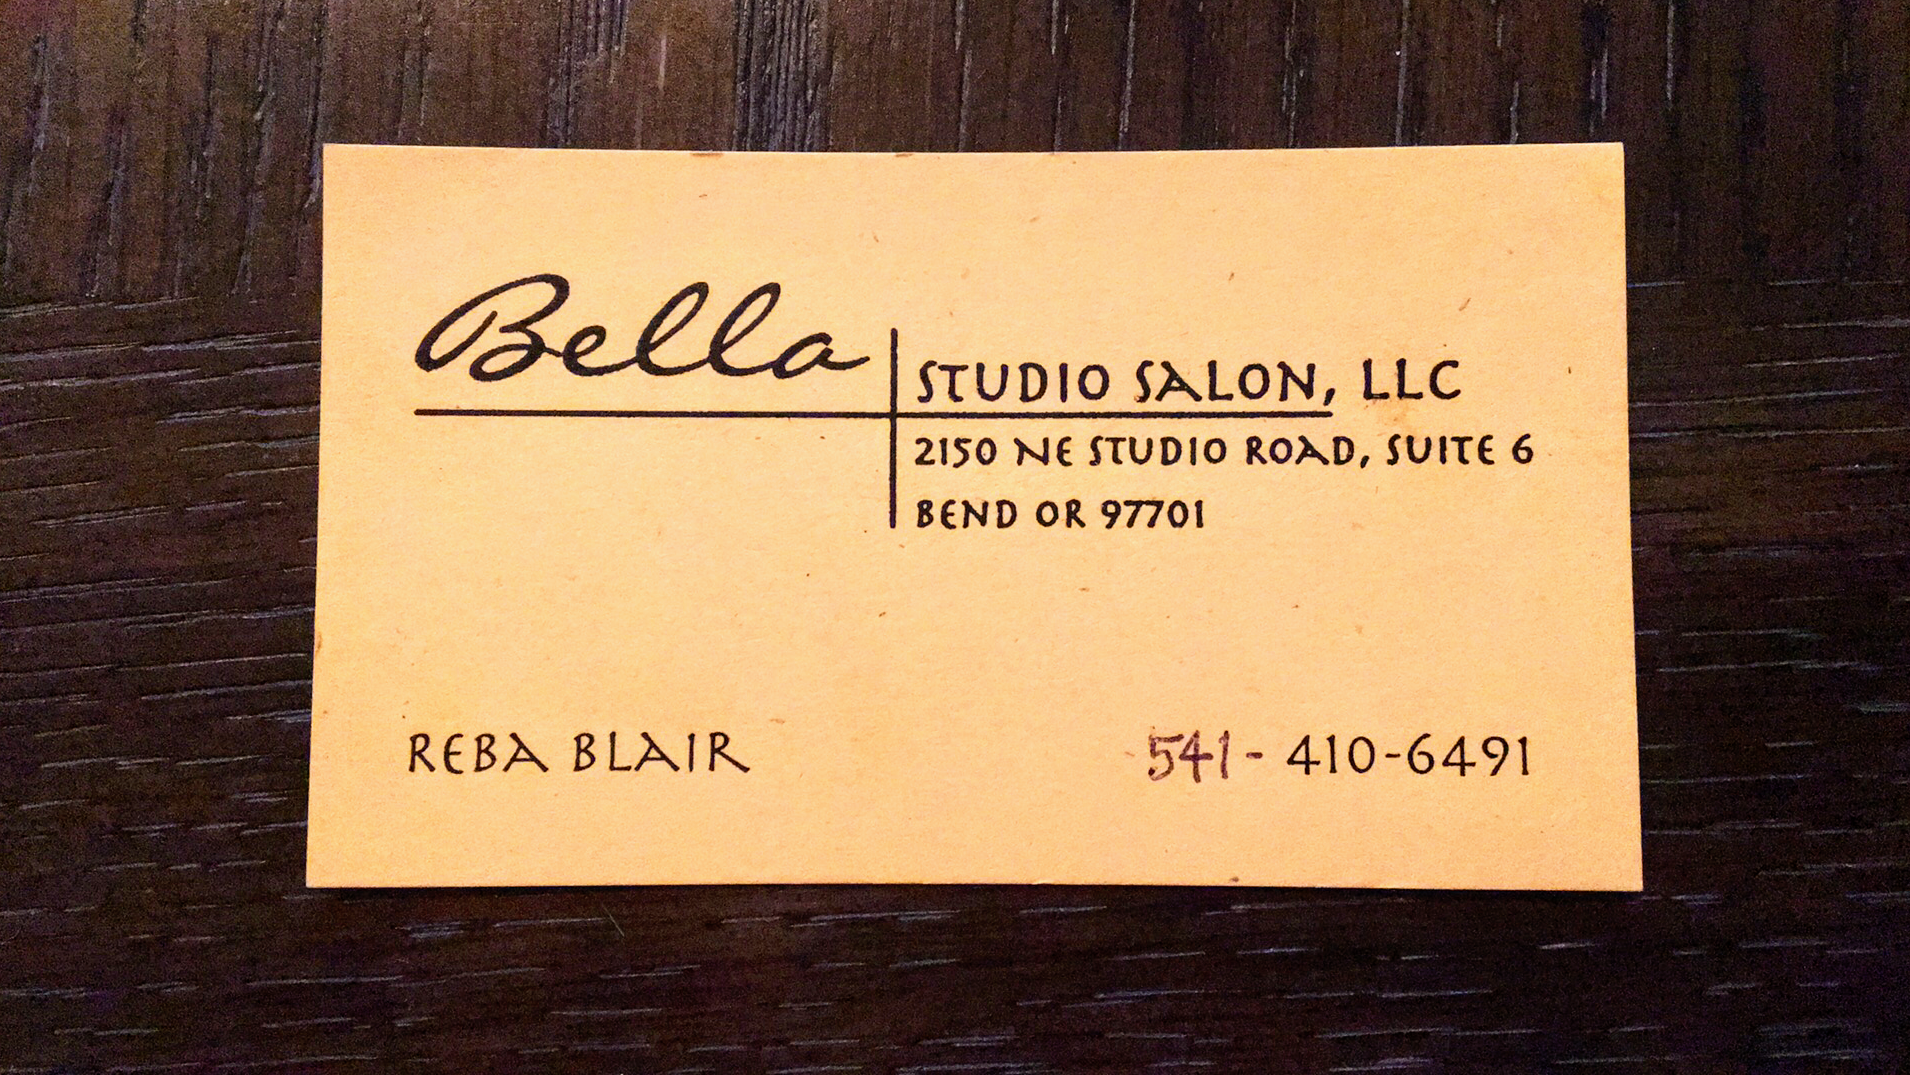 Reba Blair at Bella Studio Salon